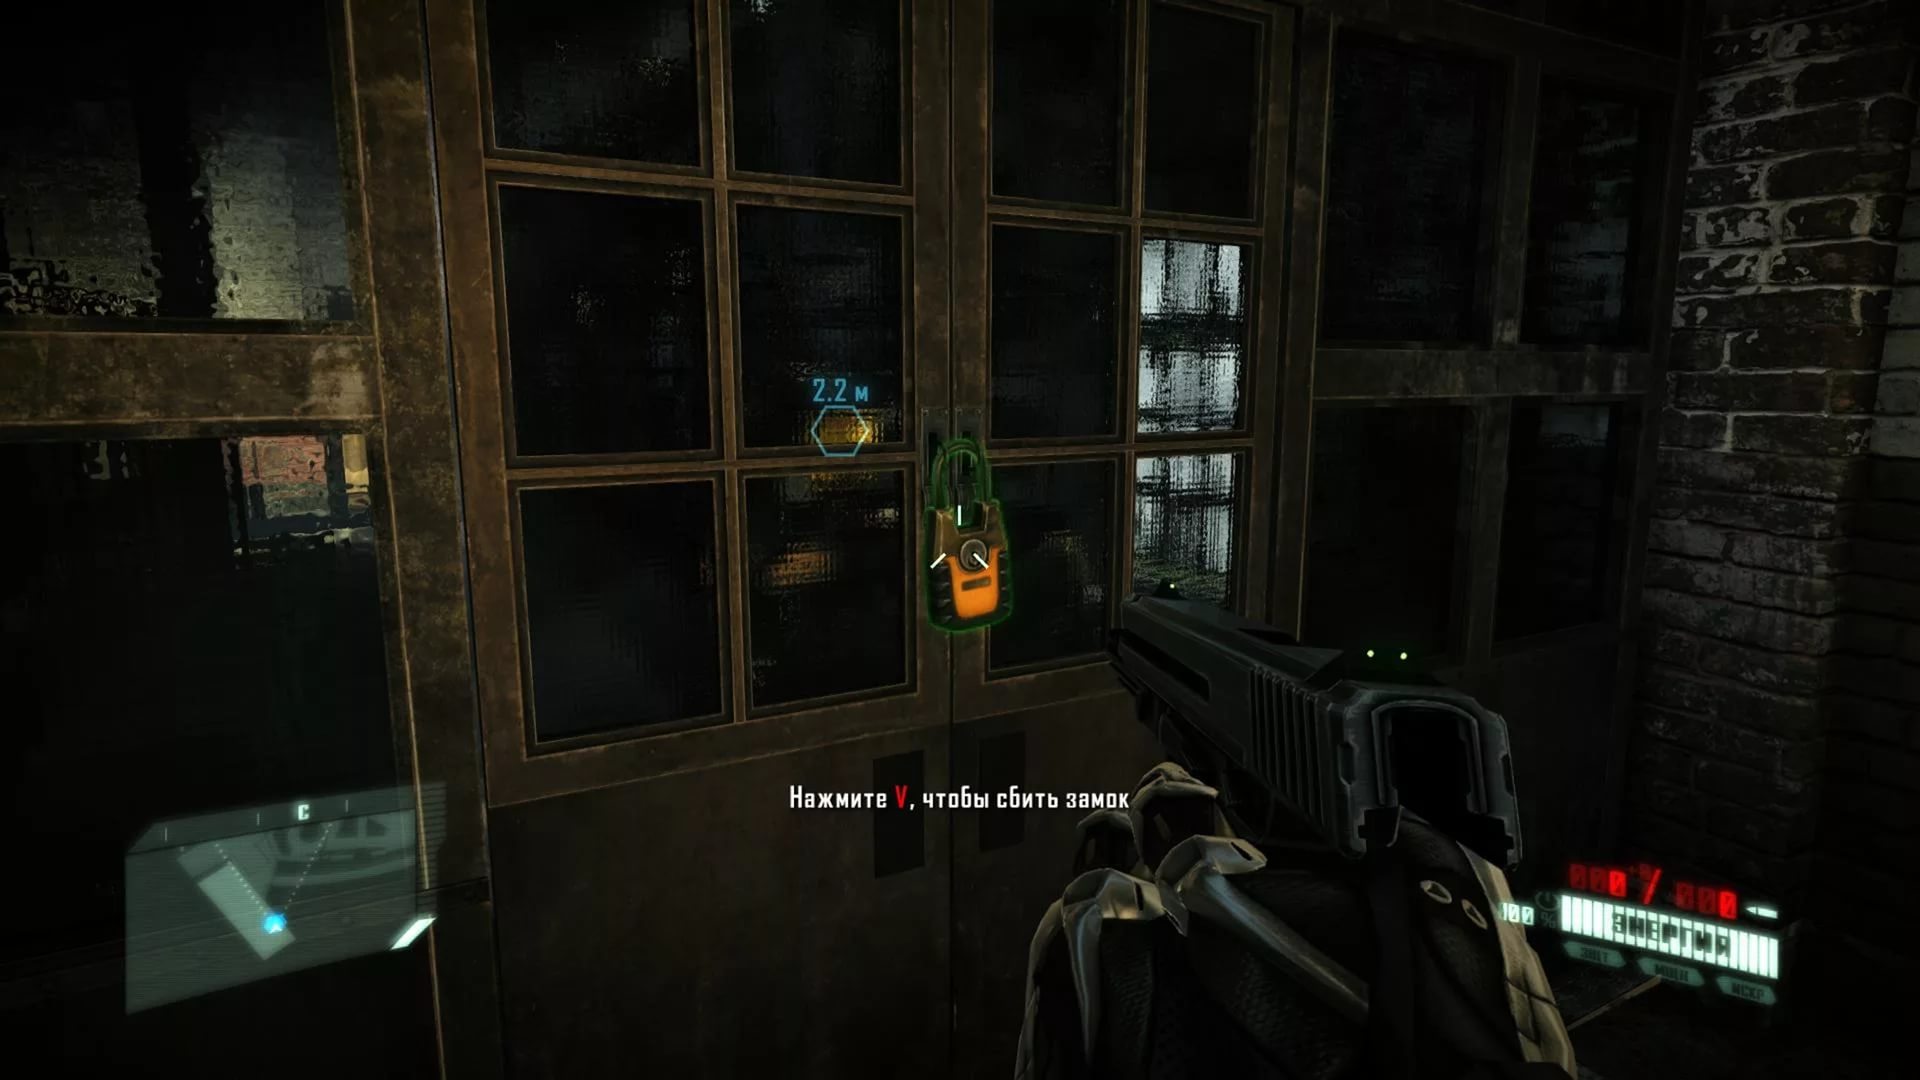 Screenshot for the game Crysis 2 (2011) download torrent RePack